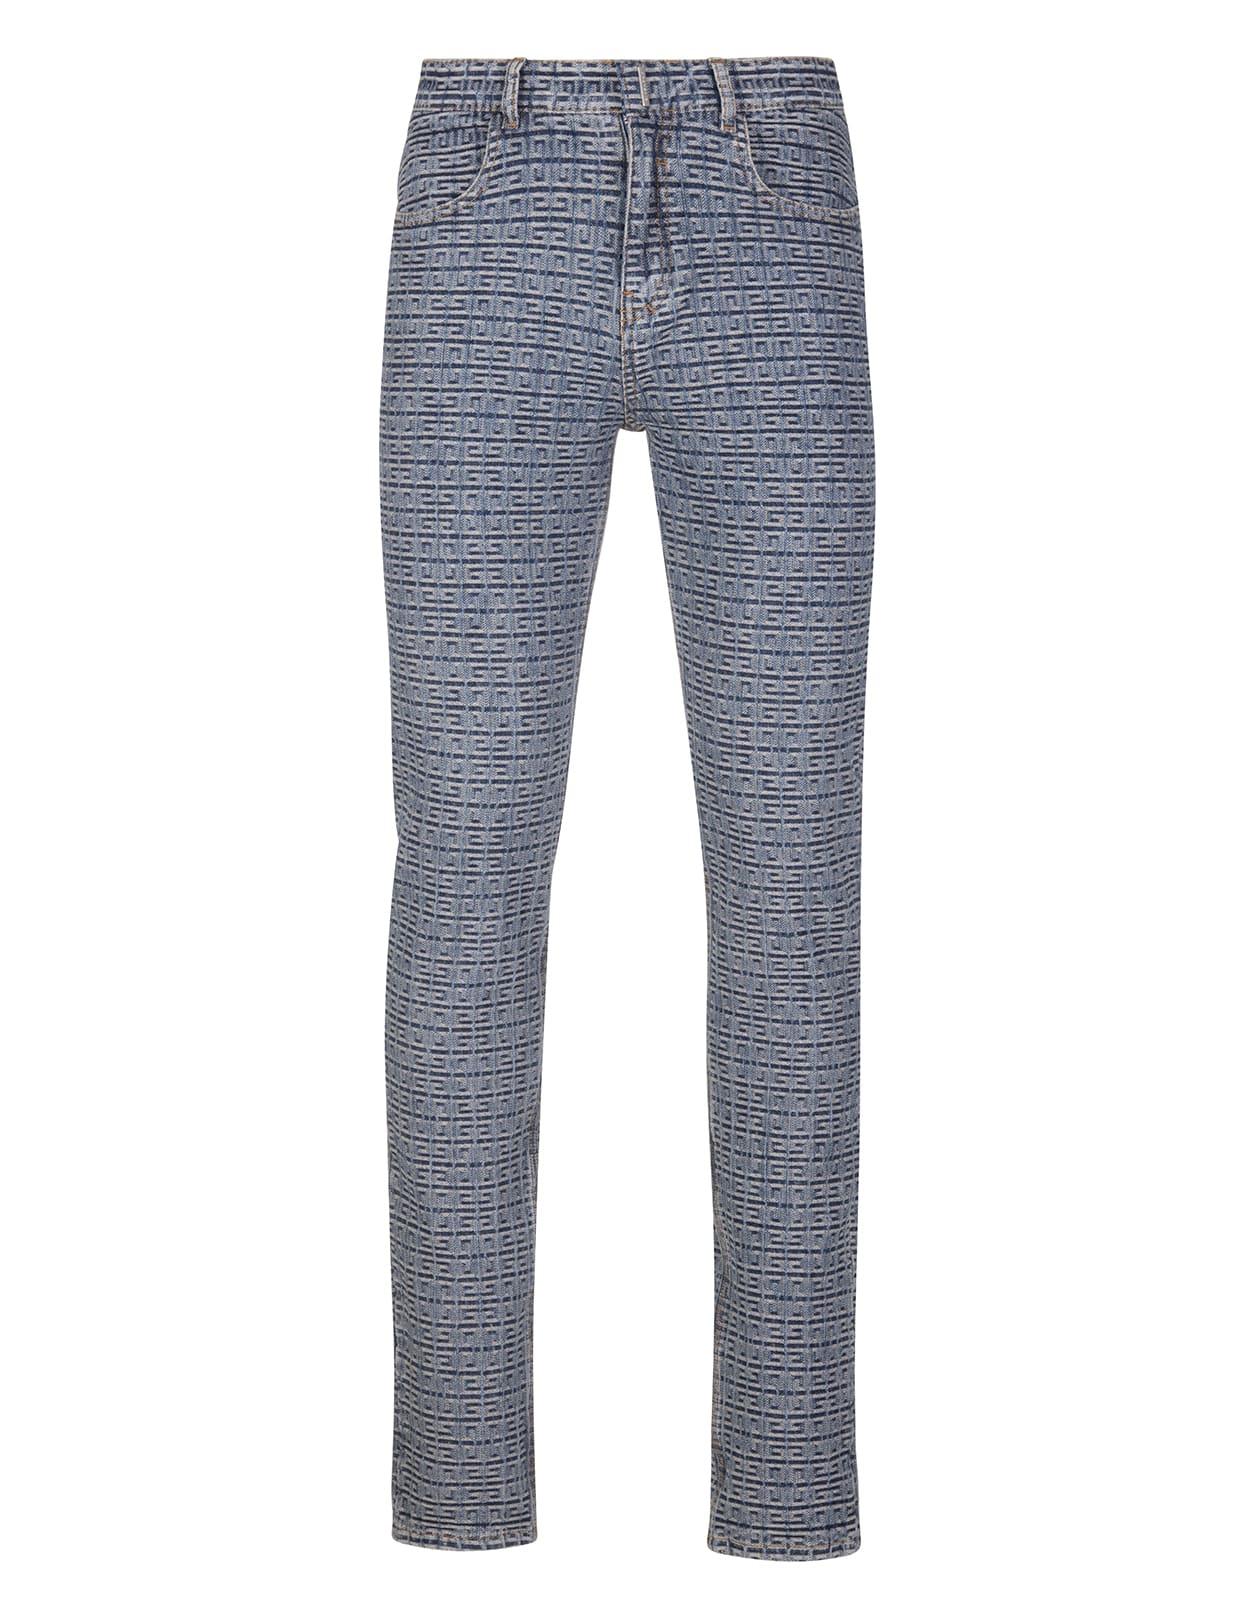 Givenchy Man Slim Fit Jeans In Vintage Blue 4g Denim